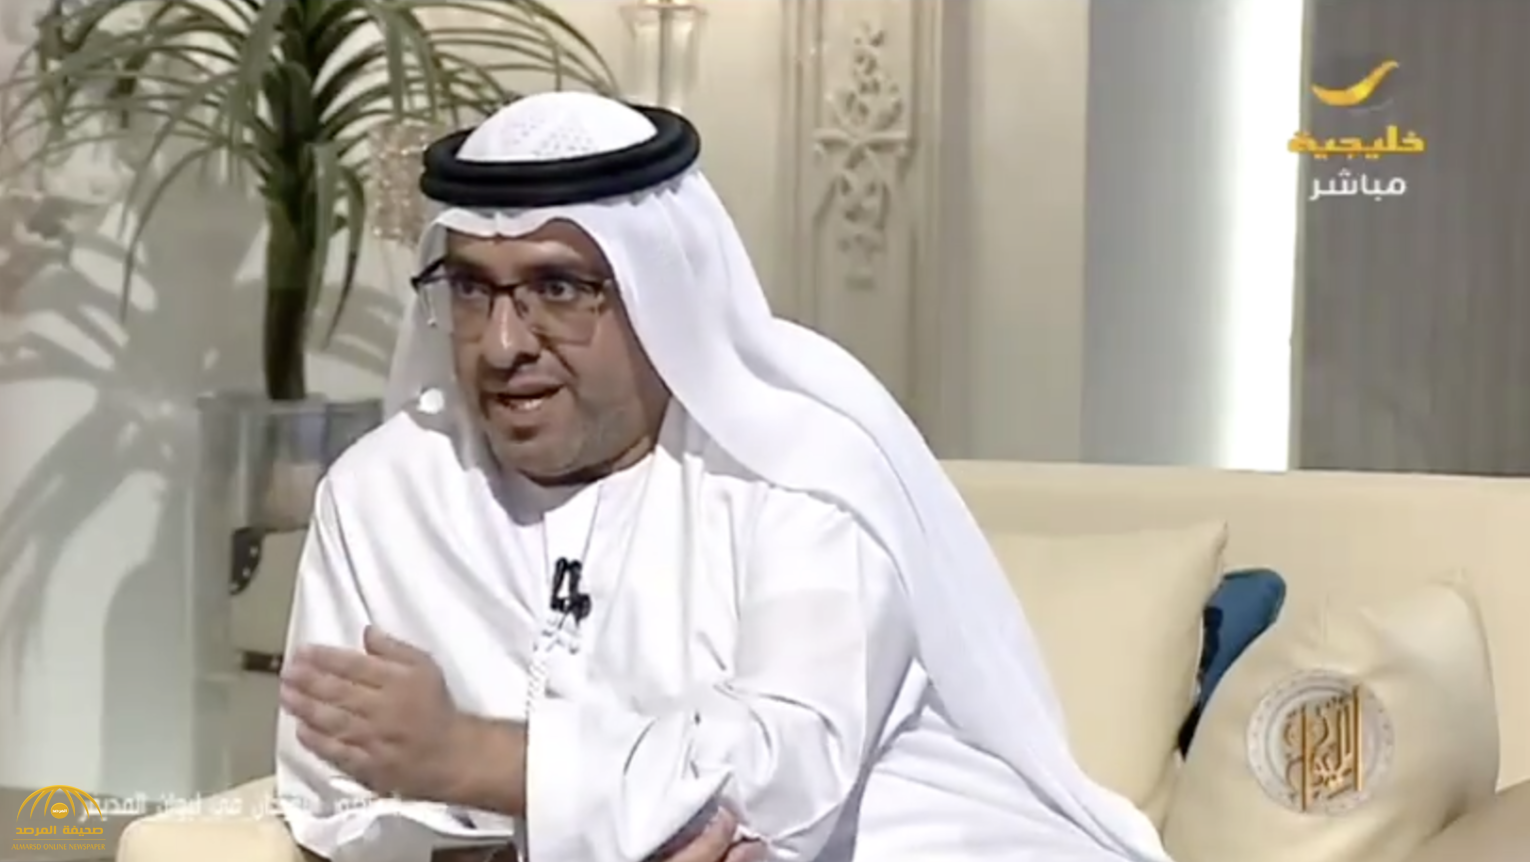 بالفيديو: " النقيدان" يكشف حقيقة حصوله  على الجنسية الإماراتية .. وهكذا رد على سؤال المديفر "الماكر"!